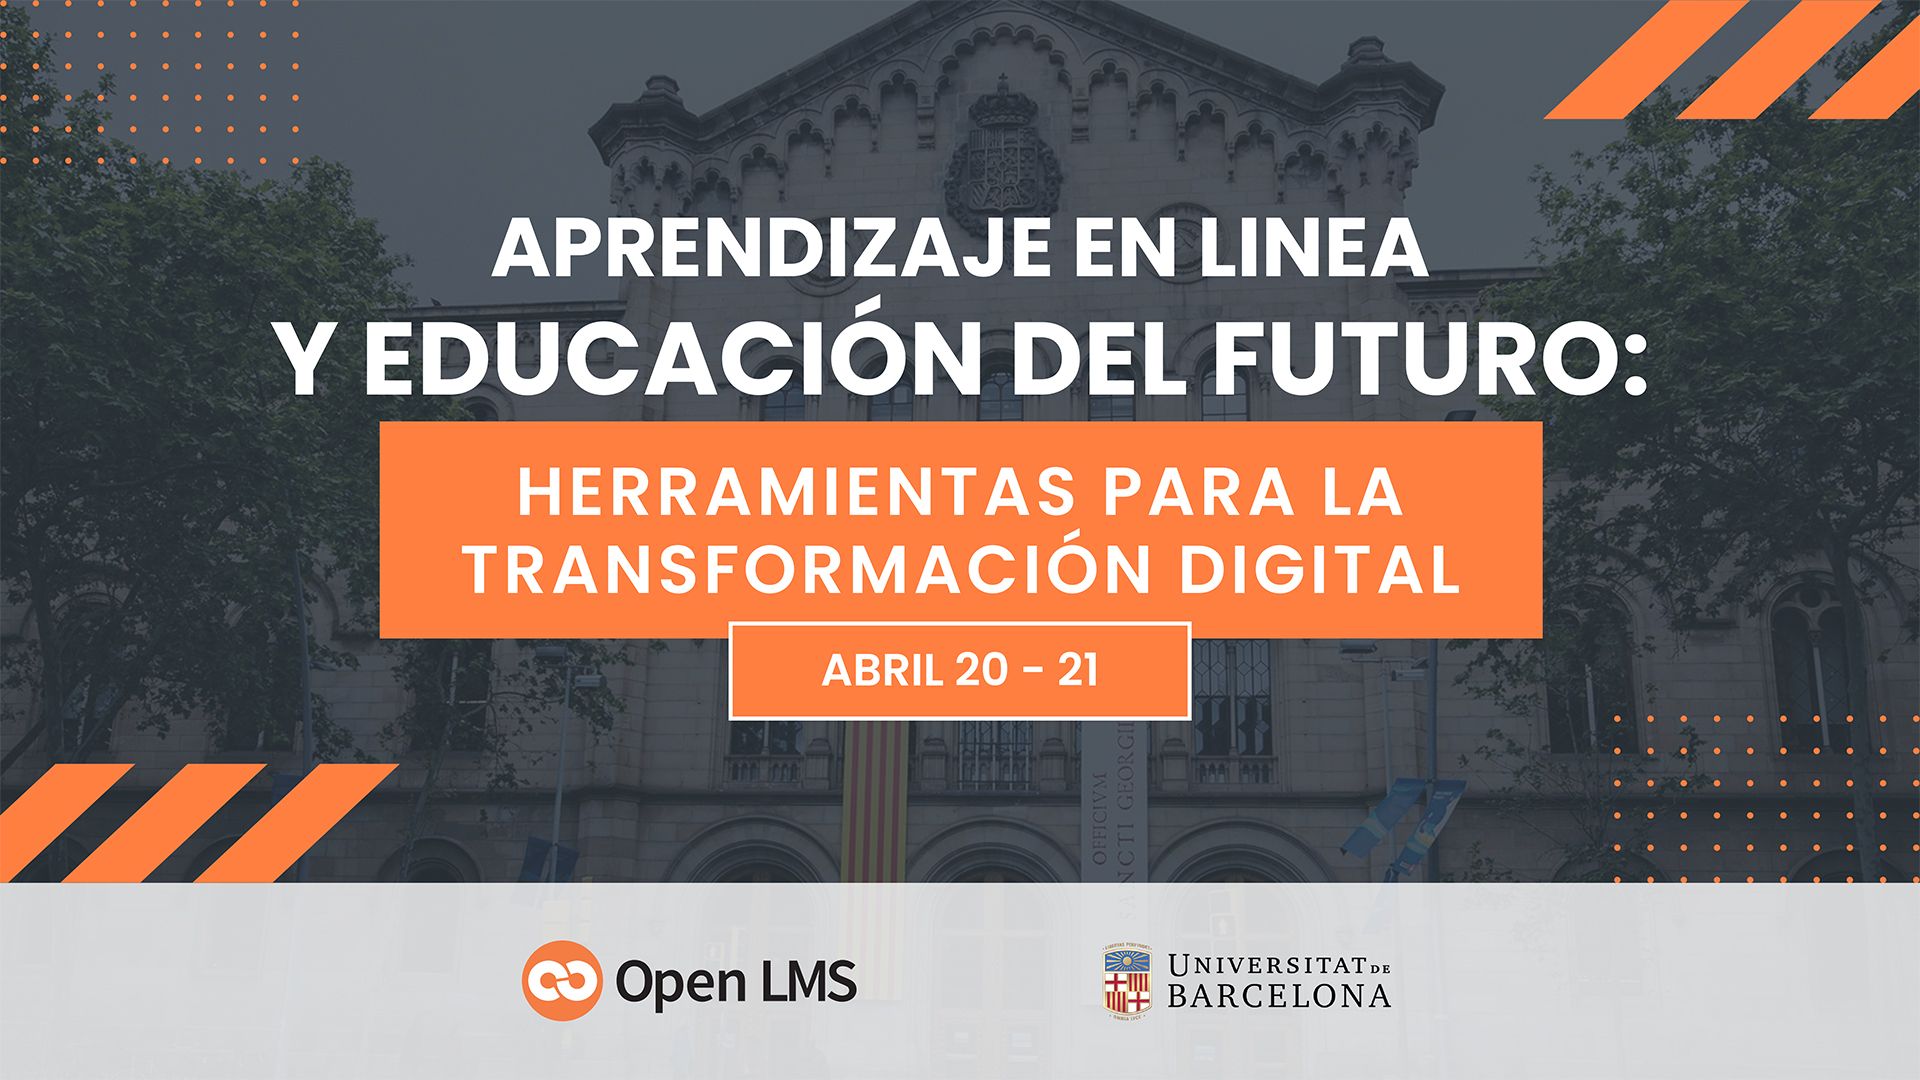 Aprendizaje en linea y educación del futuro: Herramientas para la transformación digital